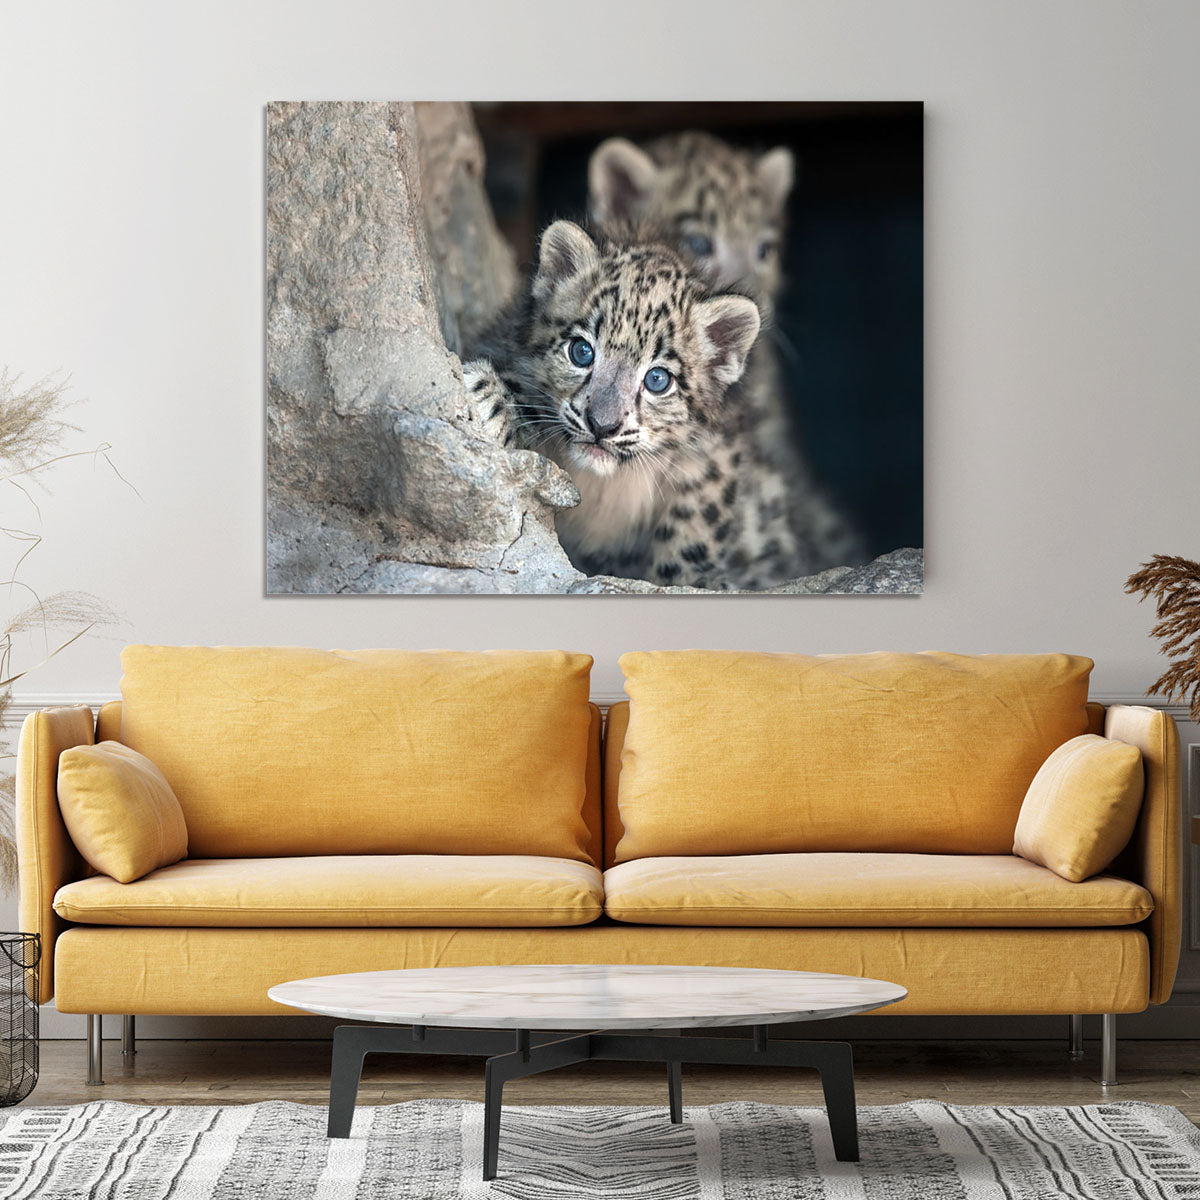 Snow leopard baby portrait Canvas Print or Poster - Canvas Art Rocks - 4